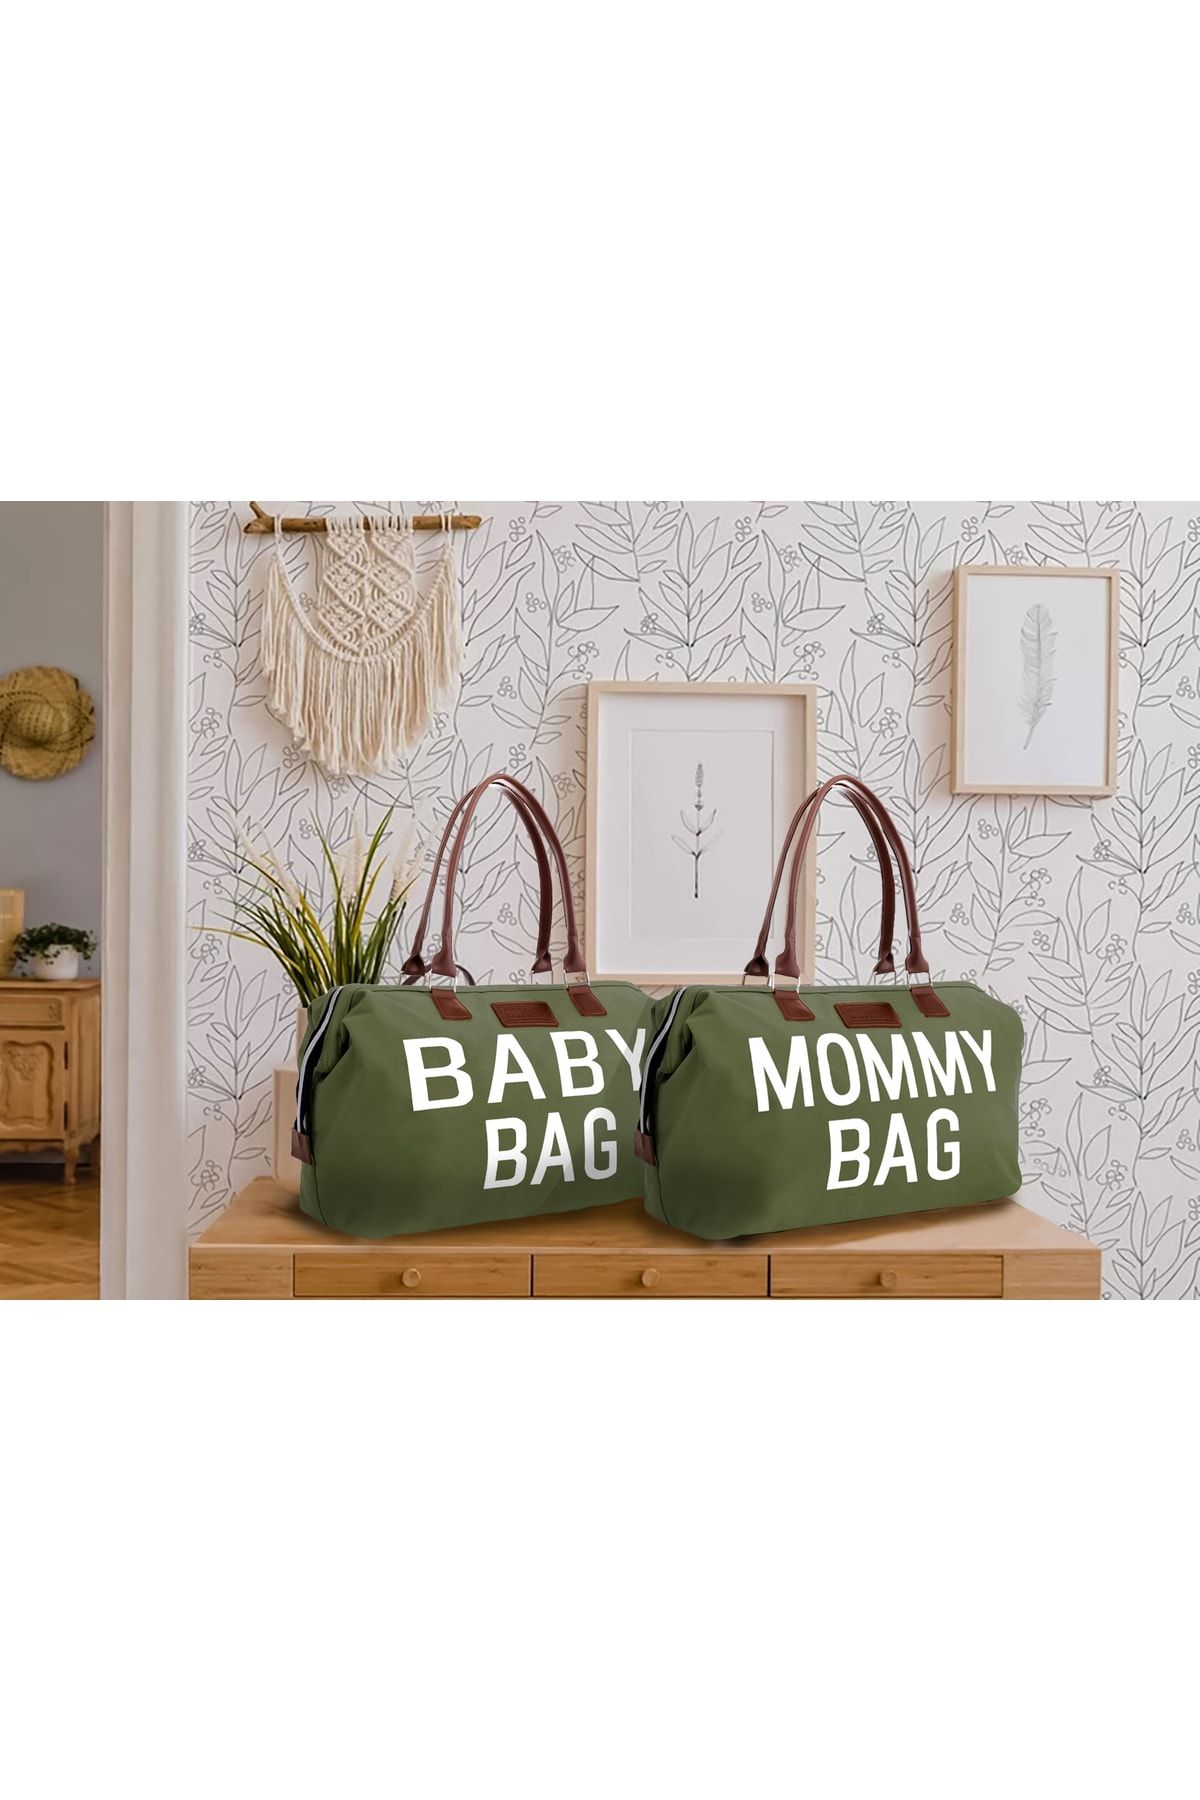 CHQEL Ikili Anne Ve Bebek Çanta Seti, Mommy Ve Baby Bag Ikili Set, Doğum, Hastane Ve Seyahat Çantası